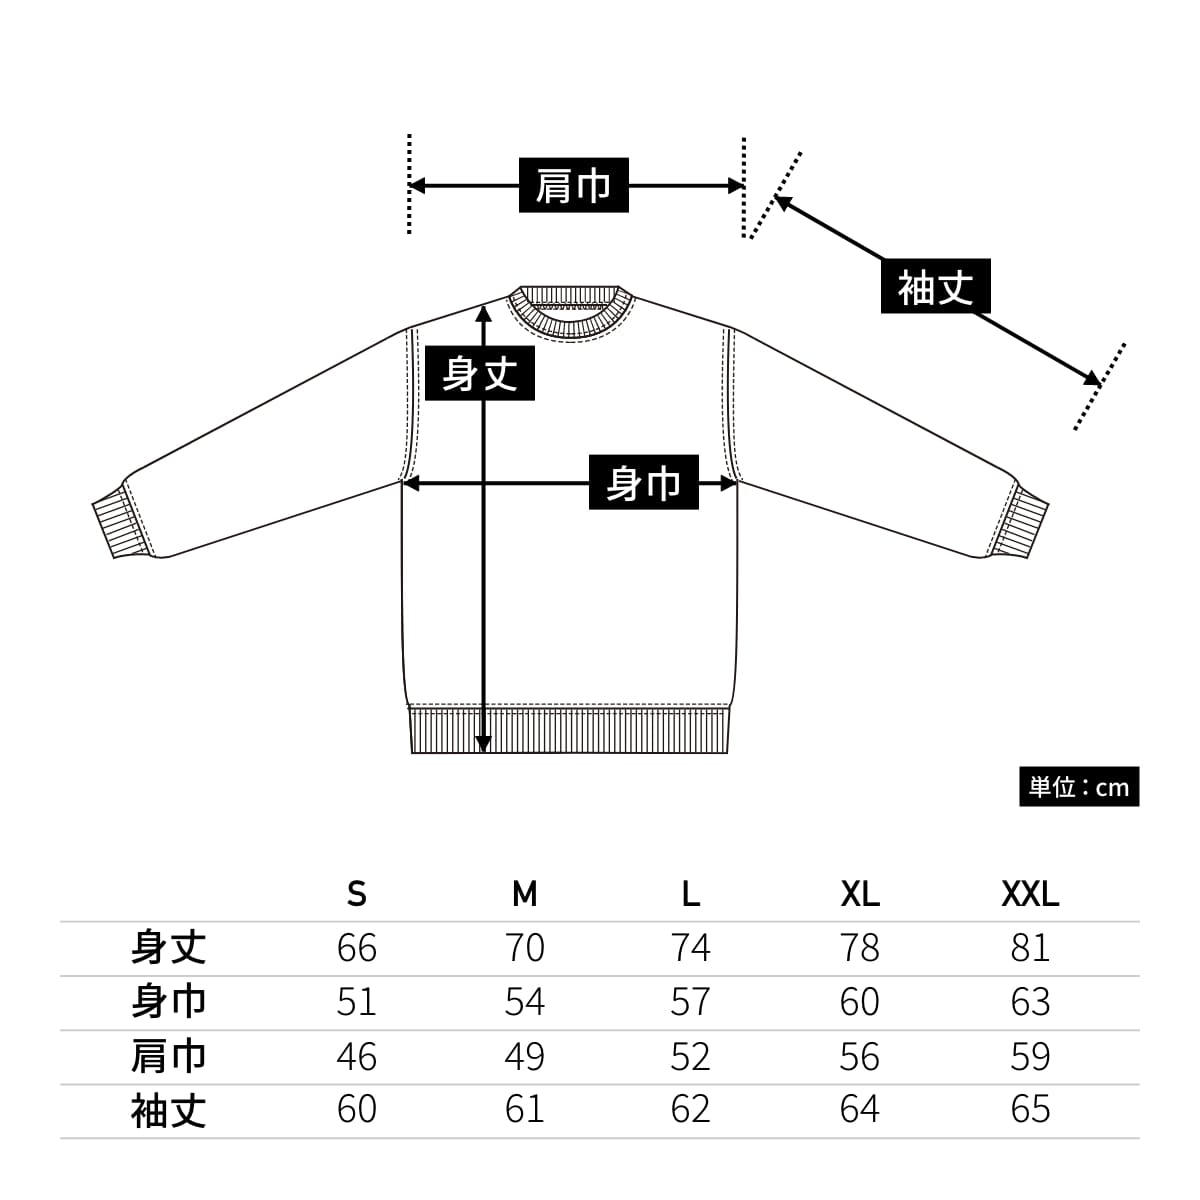 6.2オンス プレミアム ロングスリーブ Tシャツ（2.1インチリブ） | メンズ | 1枚 | 5913-01 | ネイビー